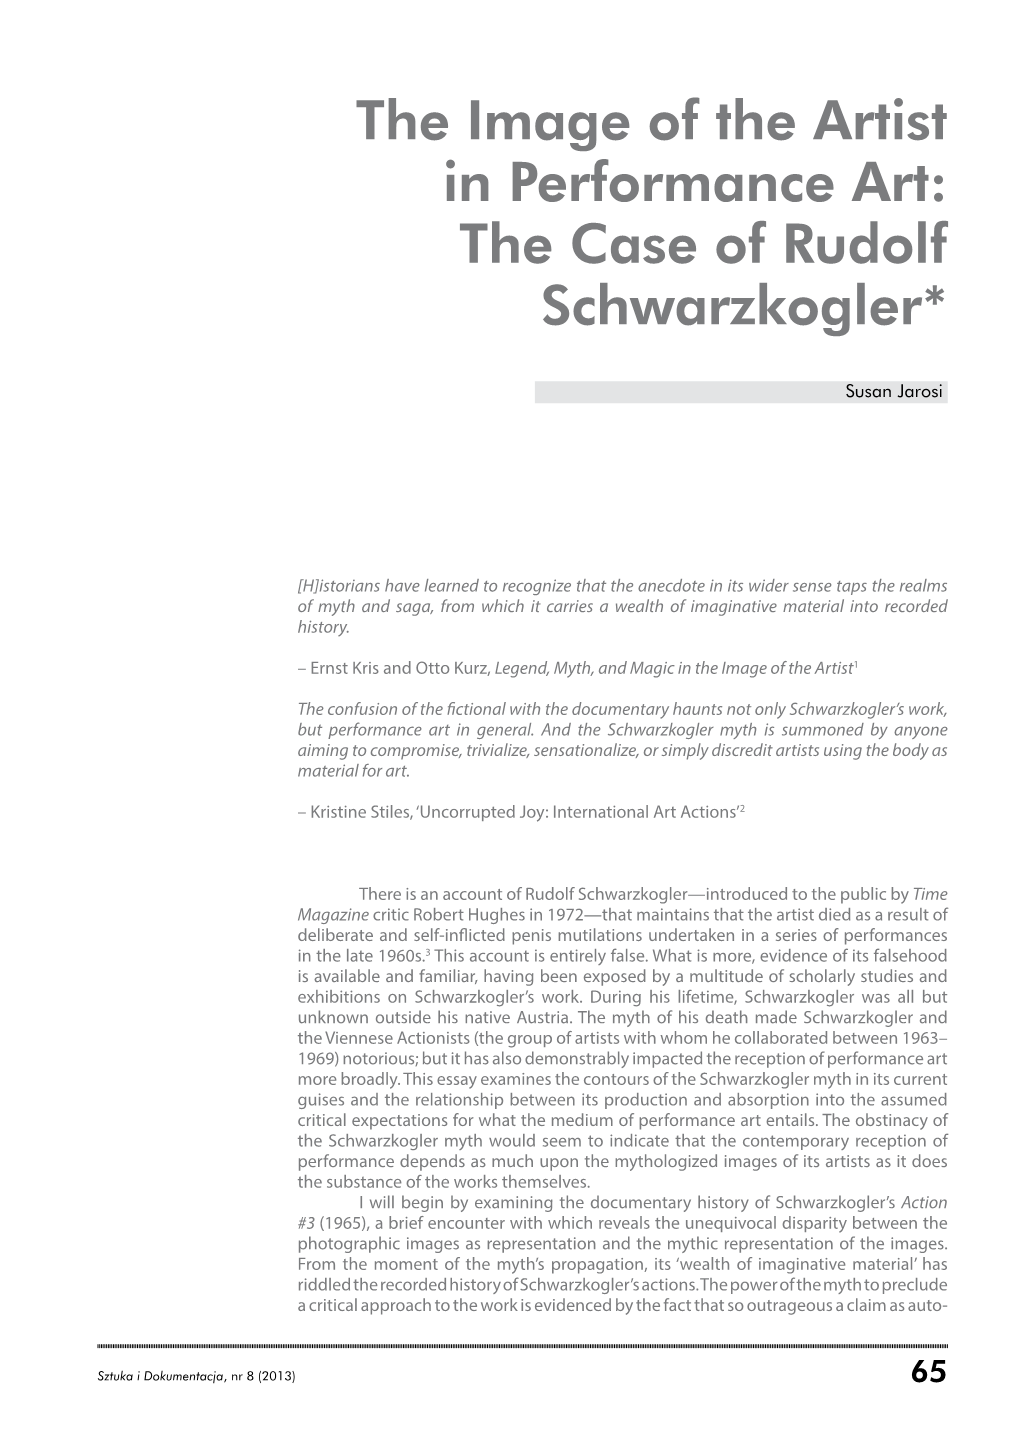 The Case of Rudolf Schwarzkogler*